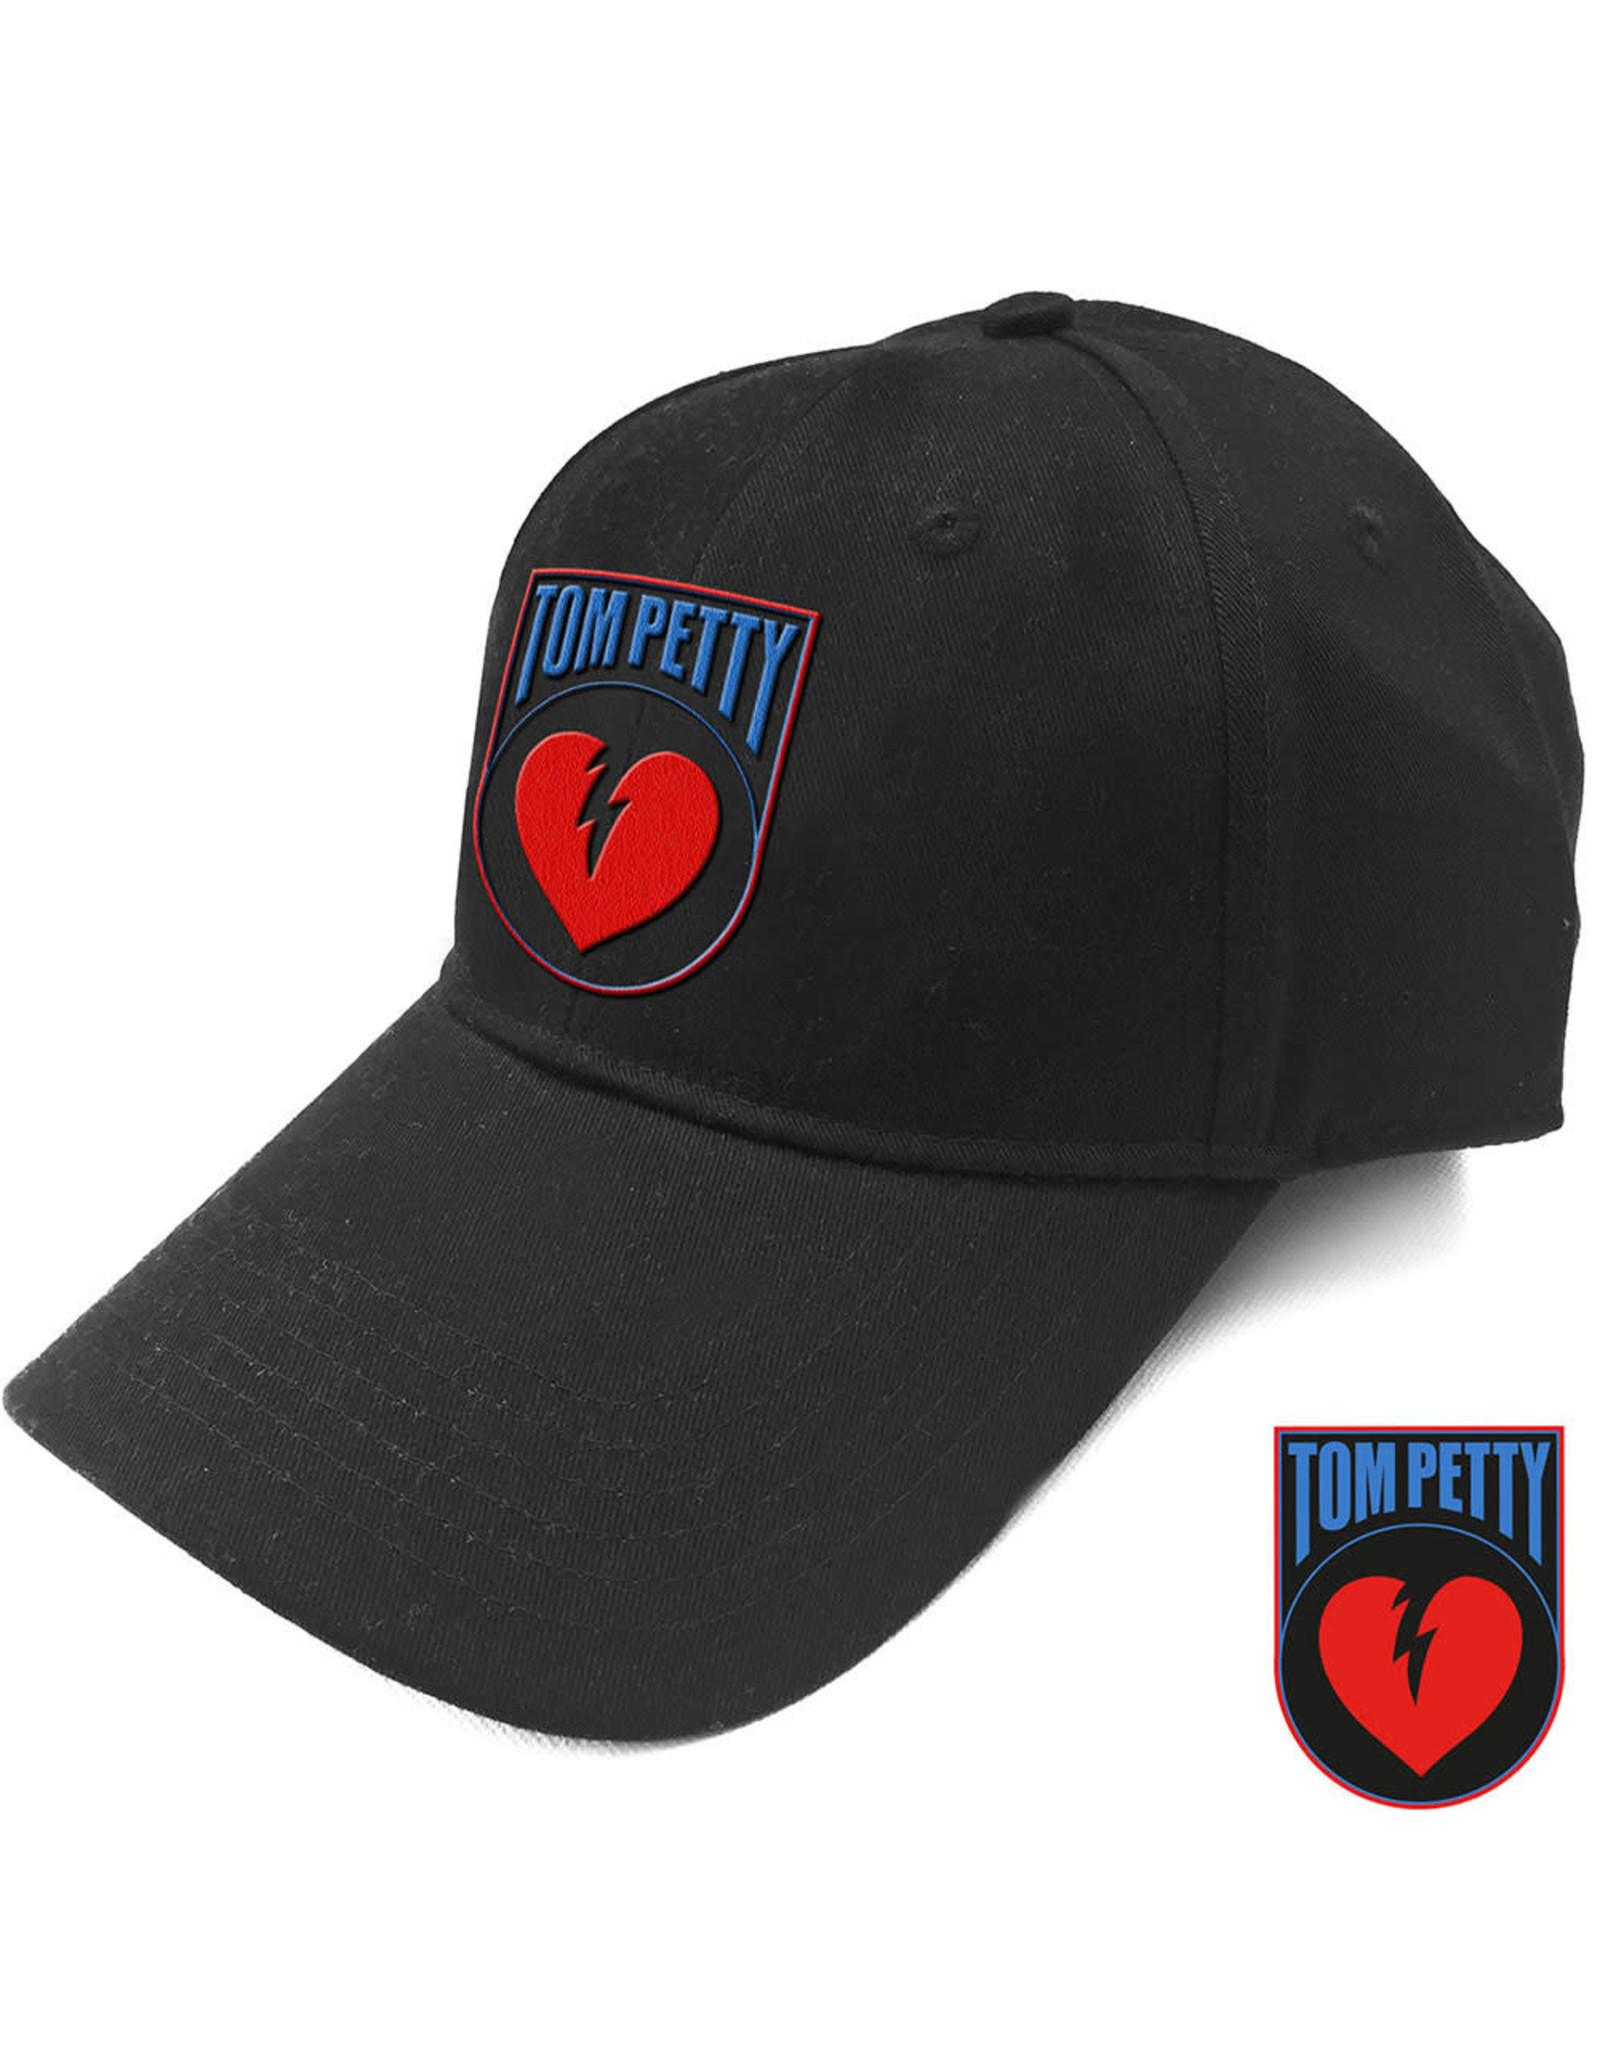 Tom Petty / Heartbreakers Logo Baseball Cap